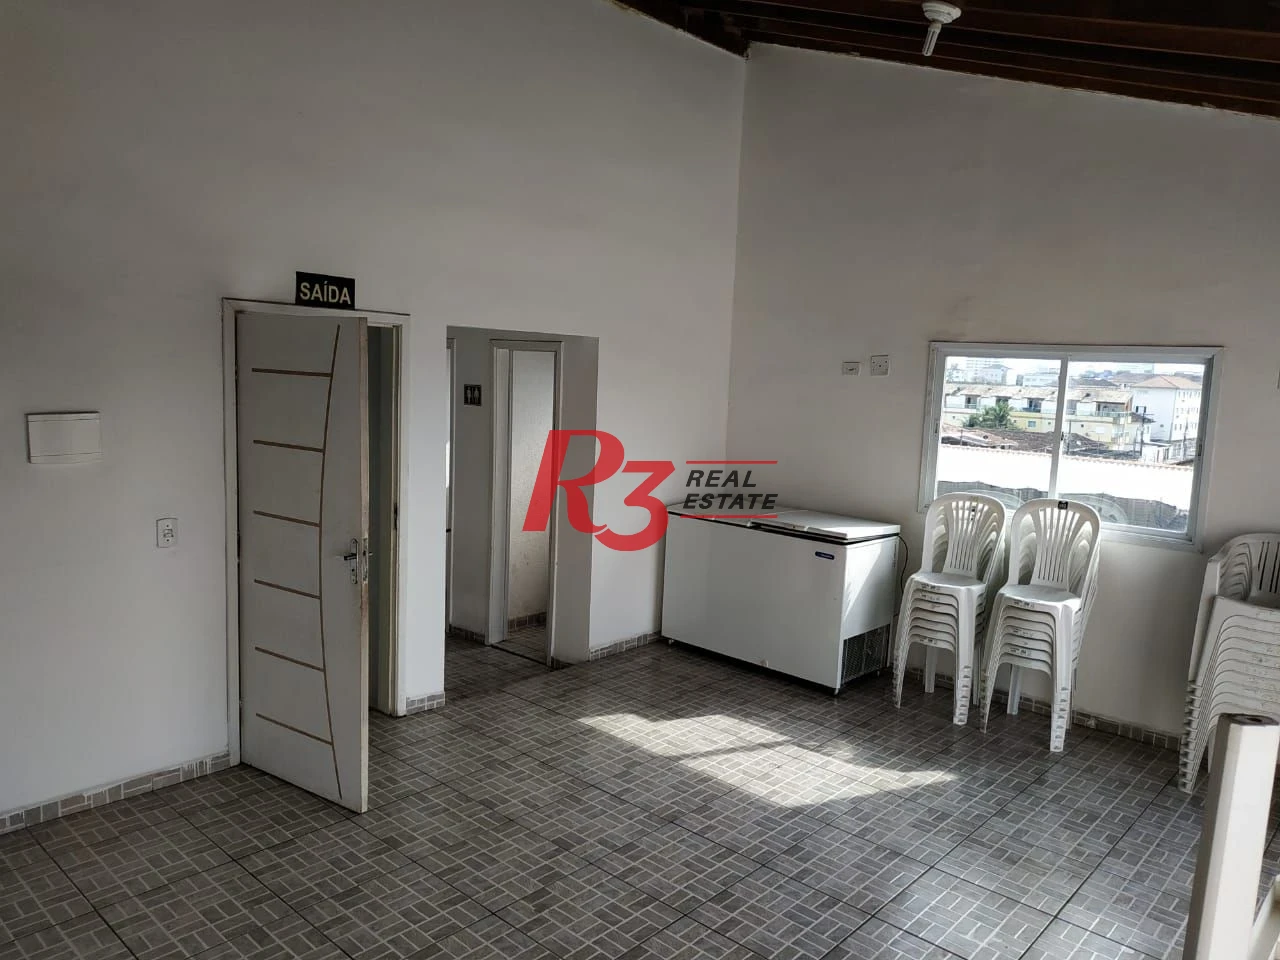 Apartamento com 2 dormitórios à venda, 54 m² por R$ 250.000,00 - Vila Voturuá - São Vicente/SP